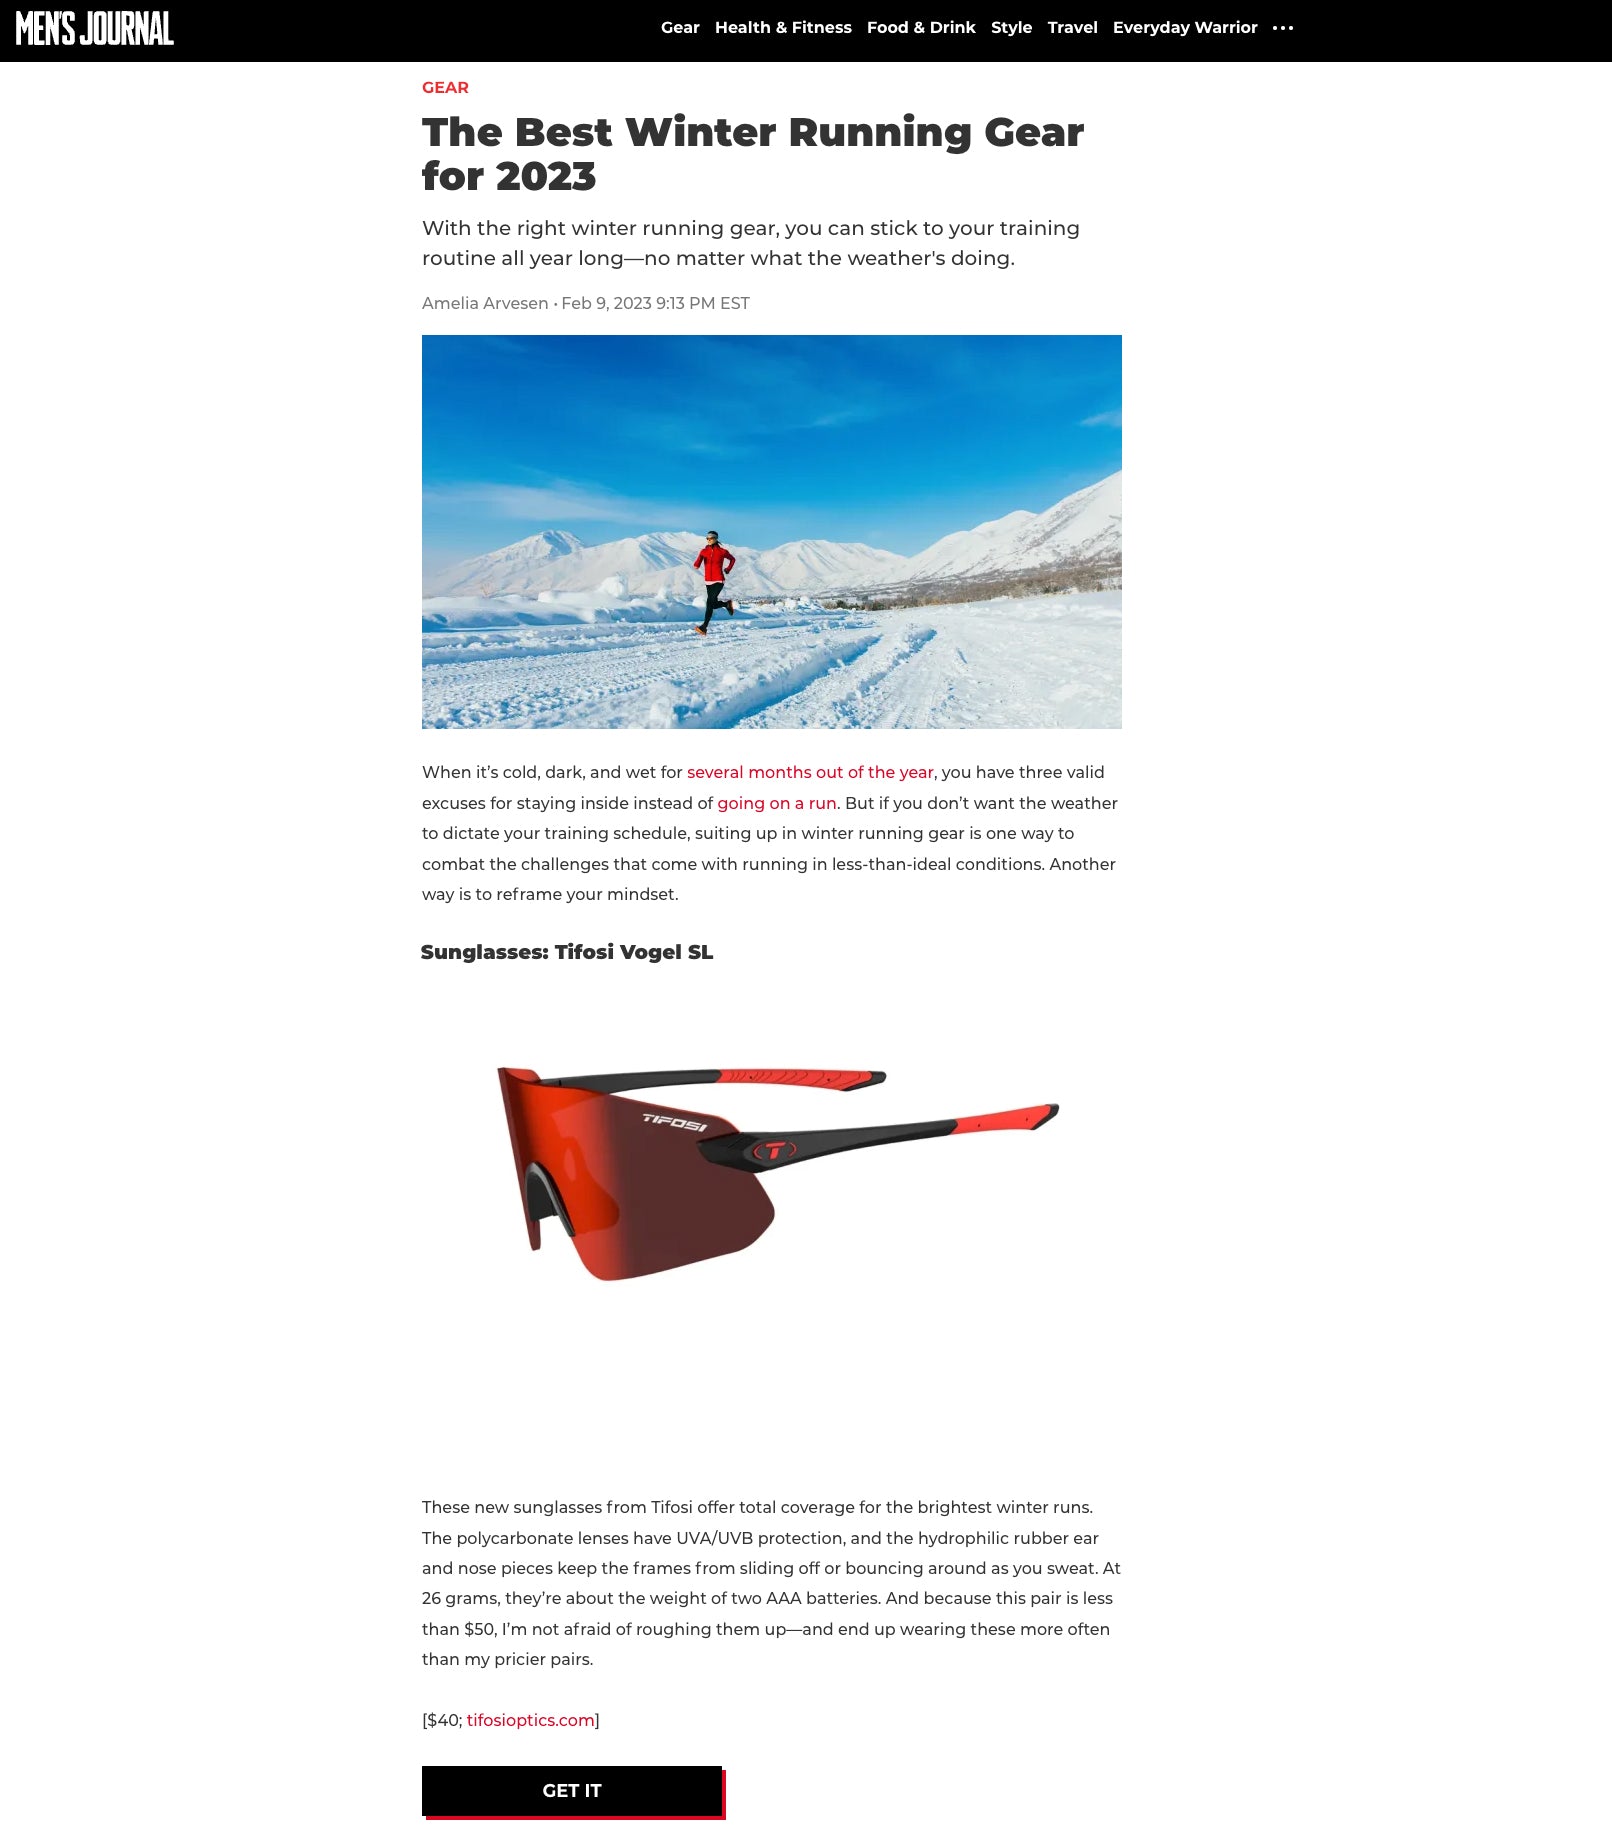 Tifosi Vogel SL Running Sunglasses - Mens Journal February 2023